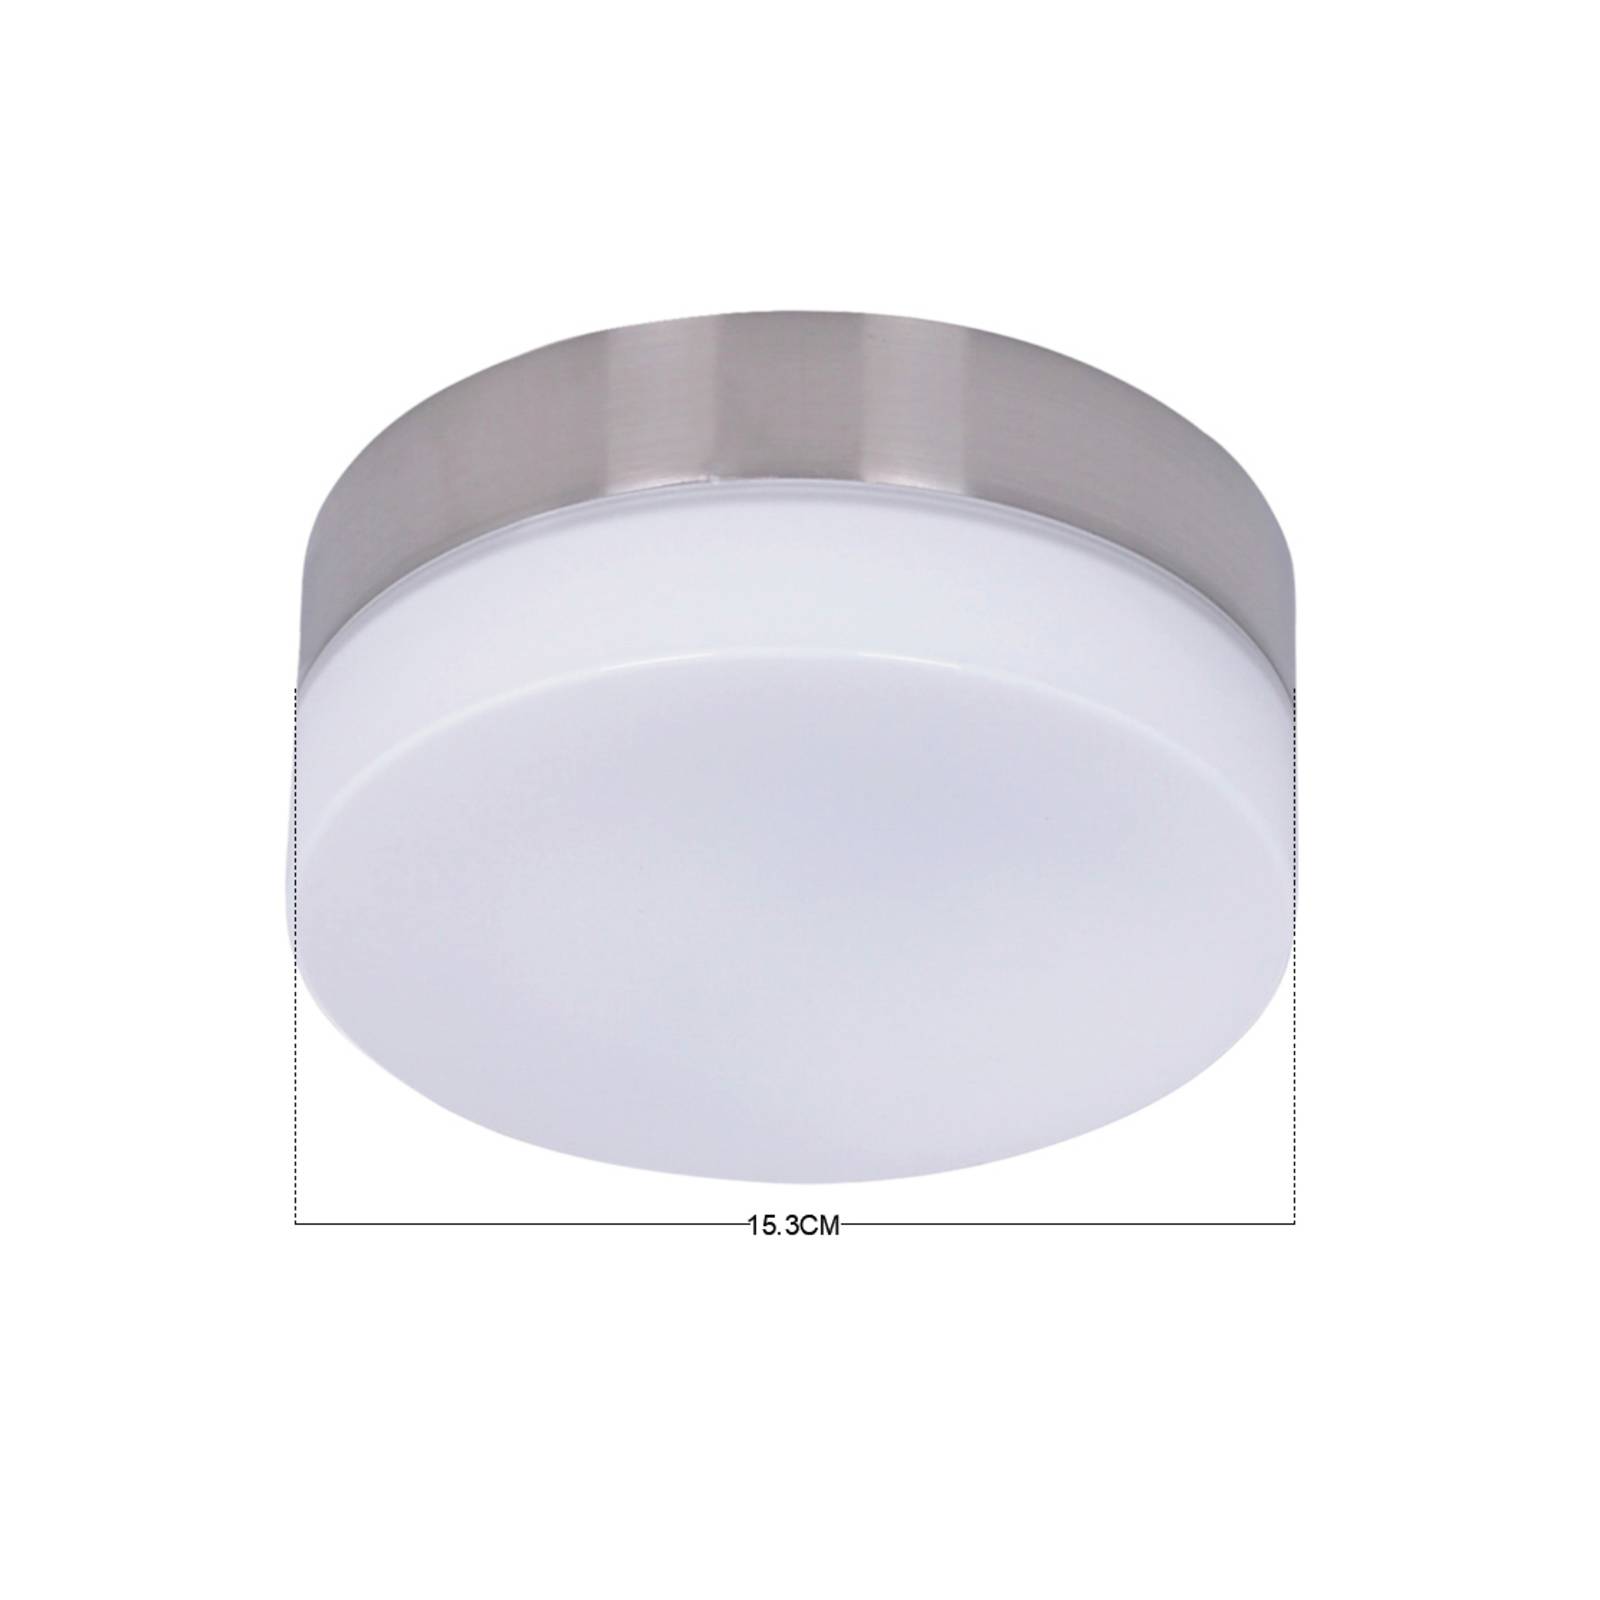 Beacon Lighting Kit luce f. Ventilatore da soffitto - GX53 cromato.